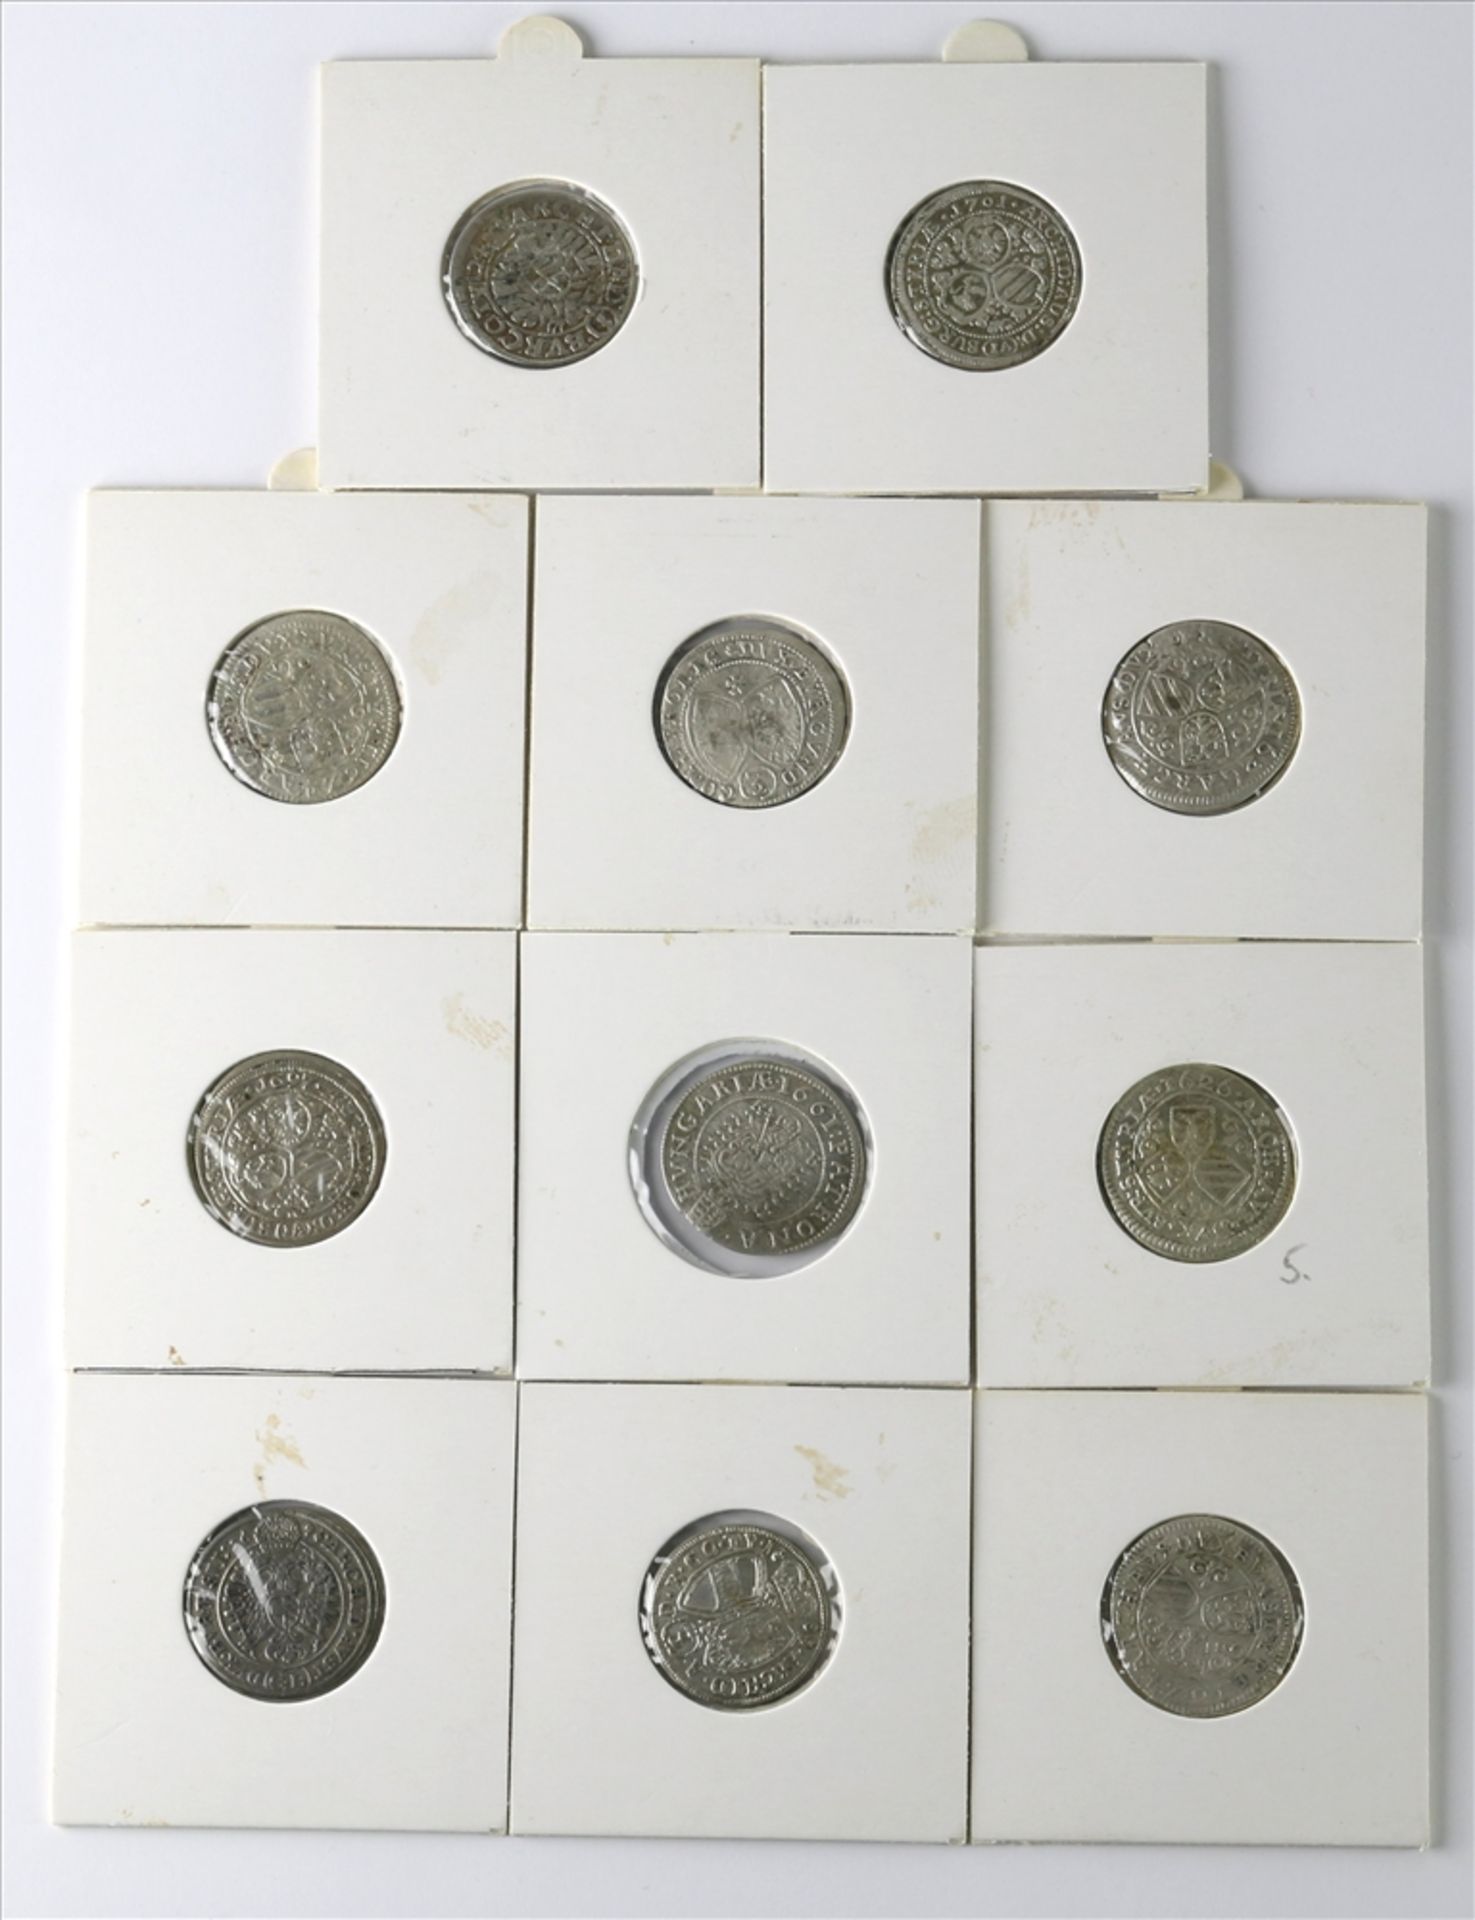 Elf Münzen Österreich Jeweils 3-Kreuzer Stücke. Ferdinand I und II sowie Leopold I. Unterschiedliche - Bild 2 aus 2